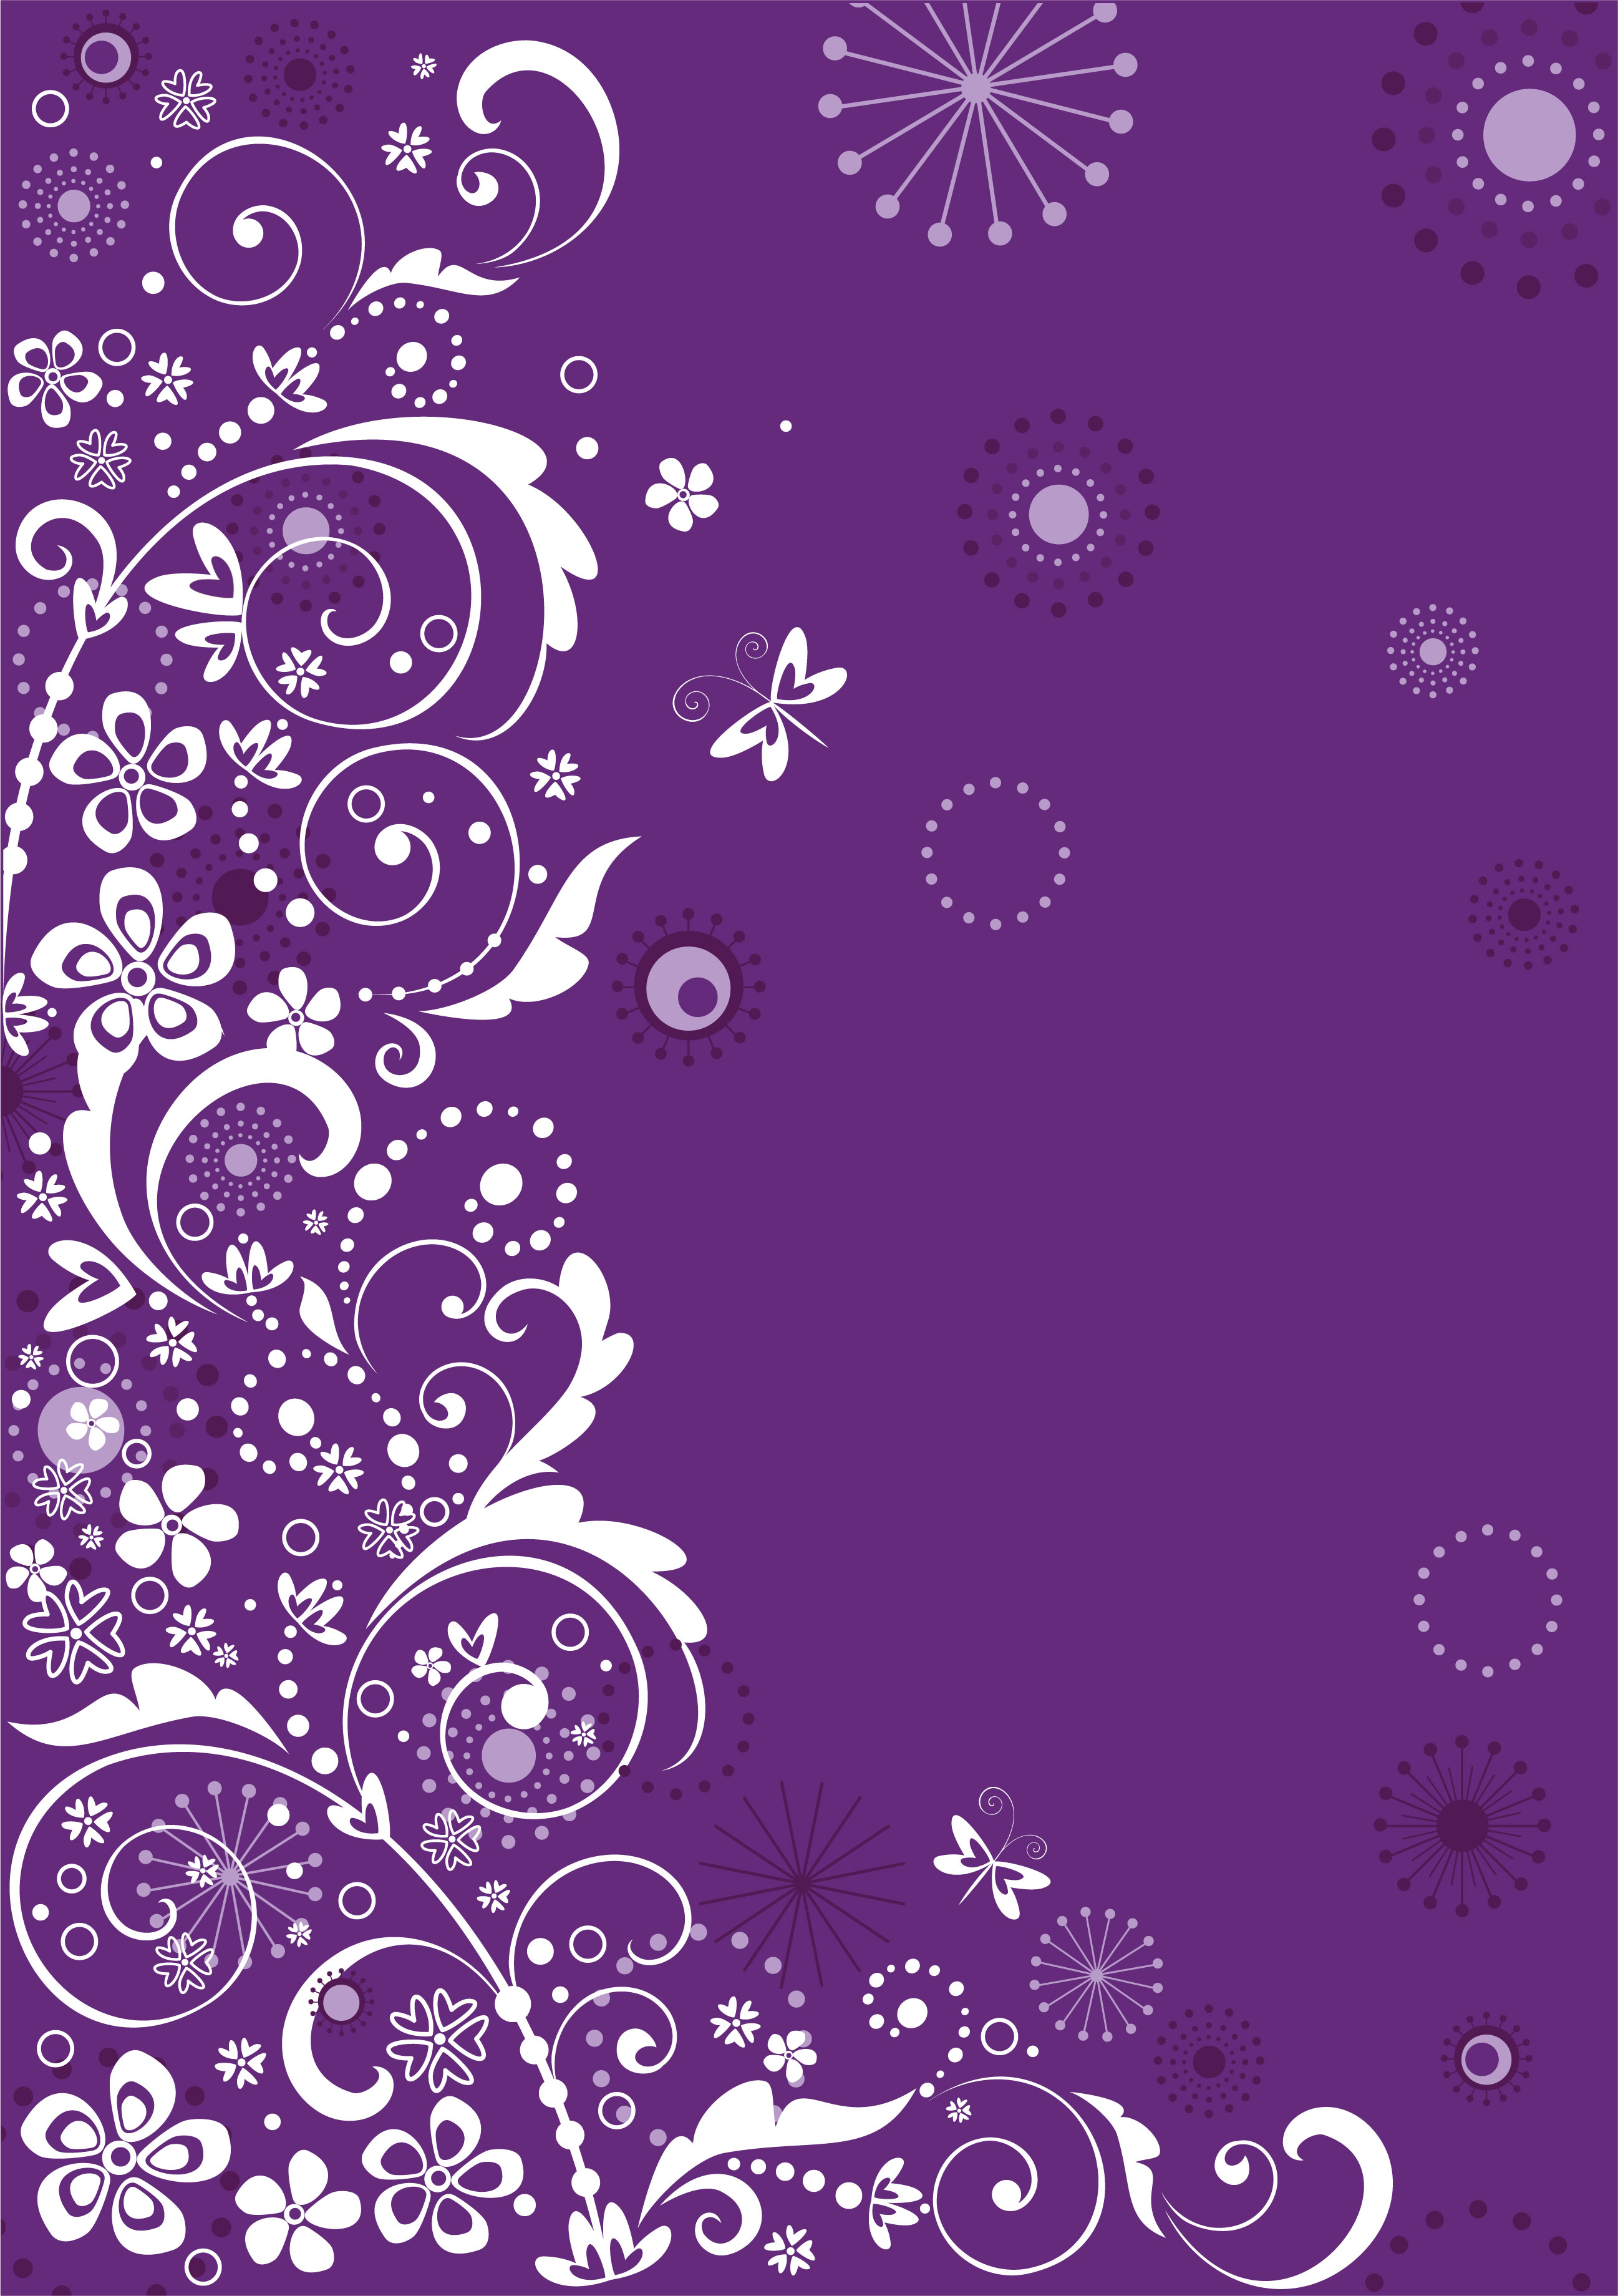 花のイラスト フリー素材 壁紙 背景no 842 紫 白抜き 蝶